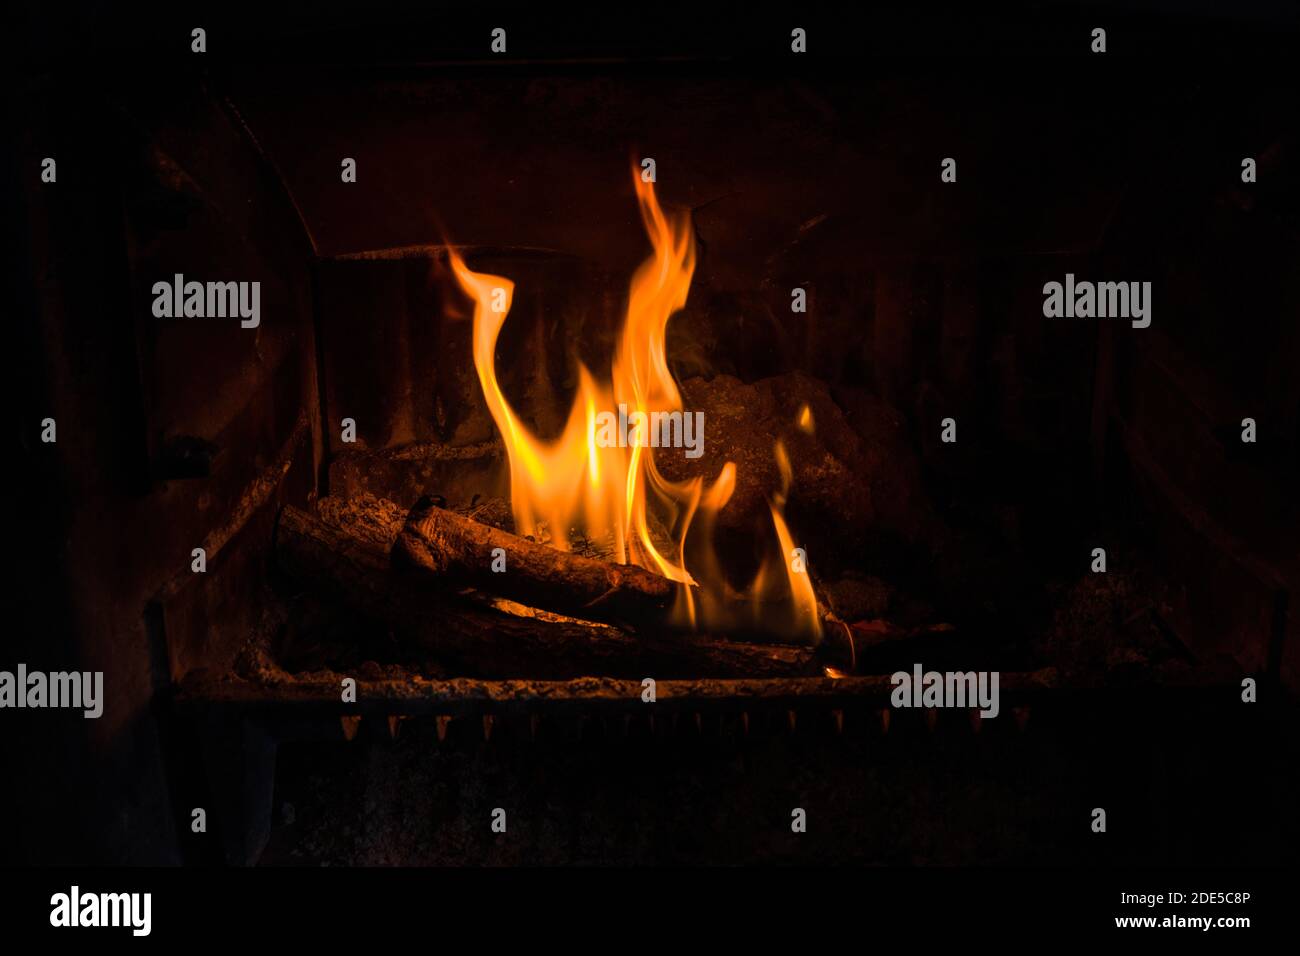 Nahaufnahme des Feuers Brennen in einem alten Kamin, kann verwendet werden, um in einem bestehenden Bild mit ungenutzten Kamin zusammengesetzt werden Stockfoto